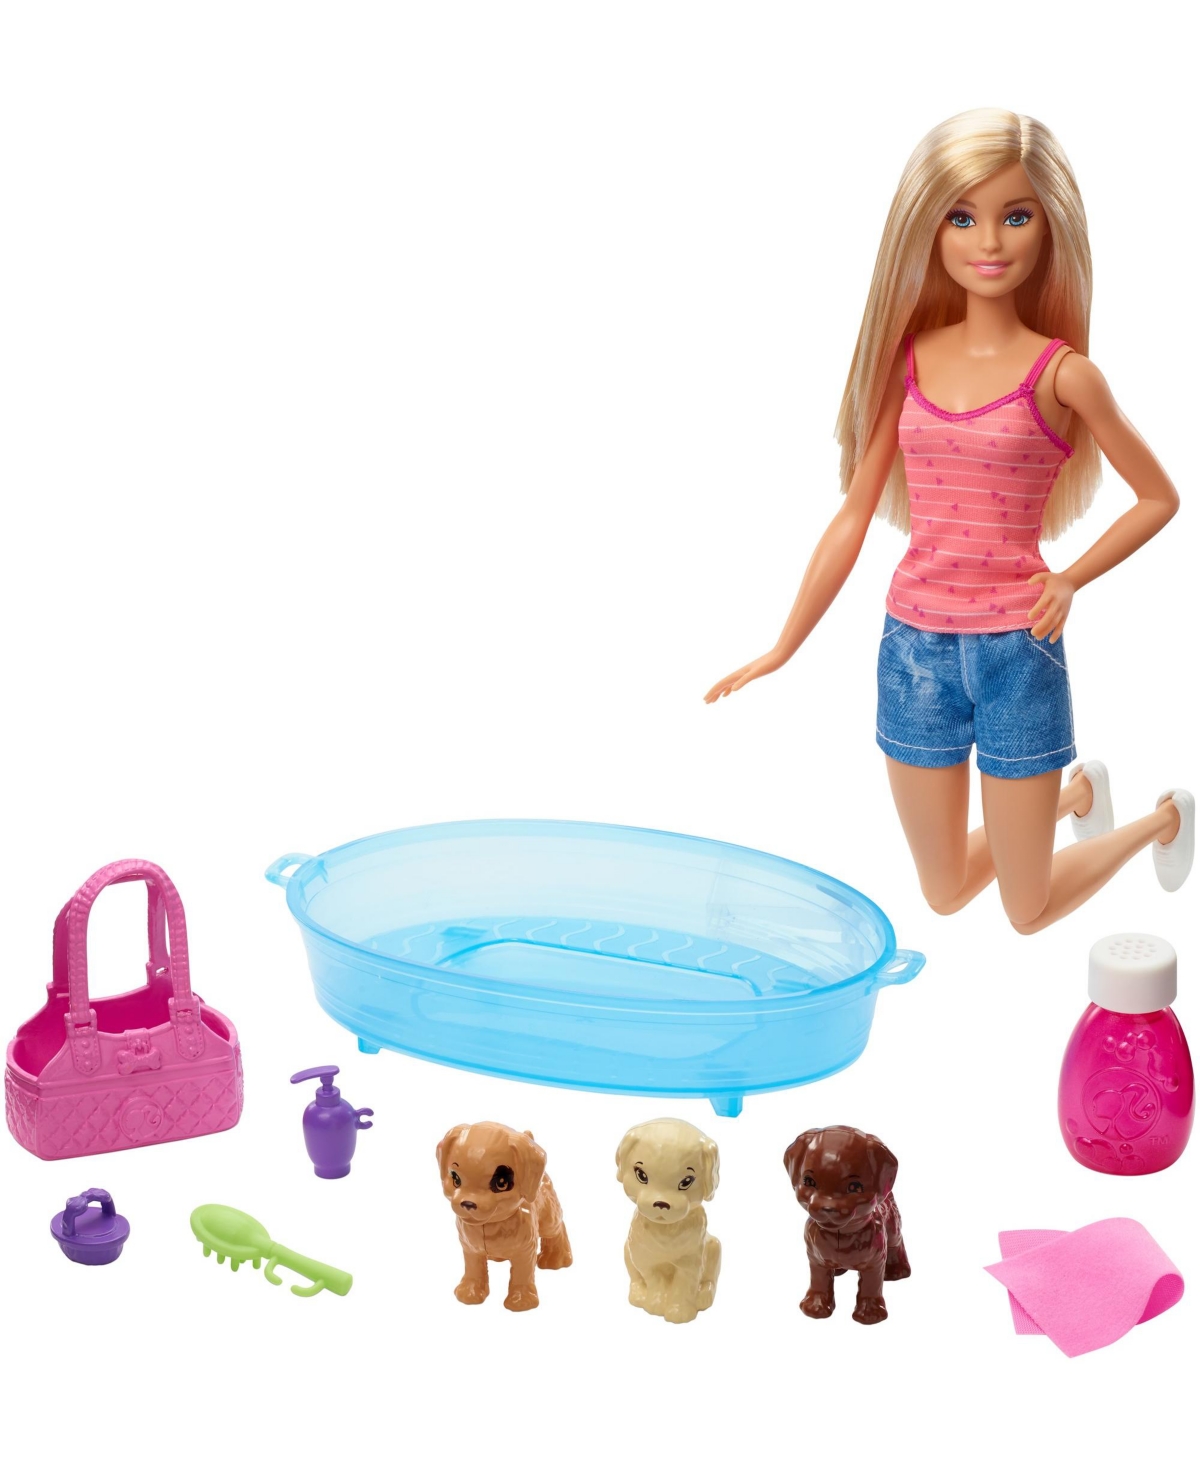 Barbie Kids' Doll & Accessories In Multi